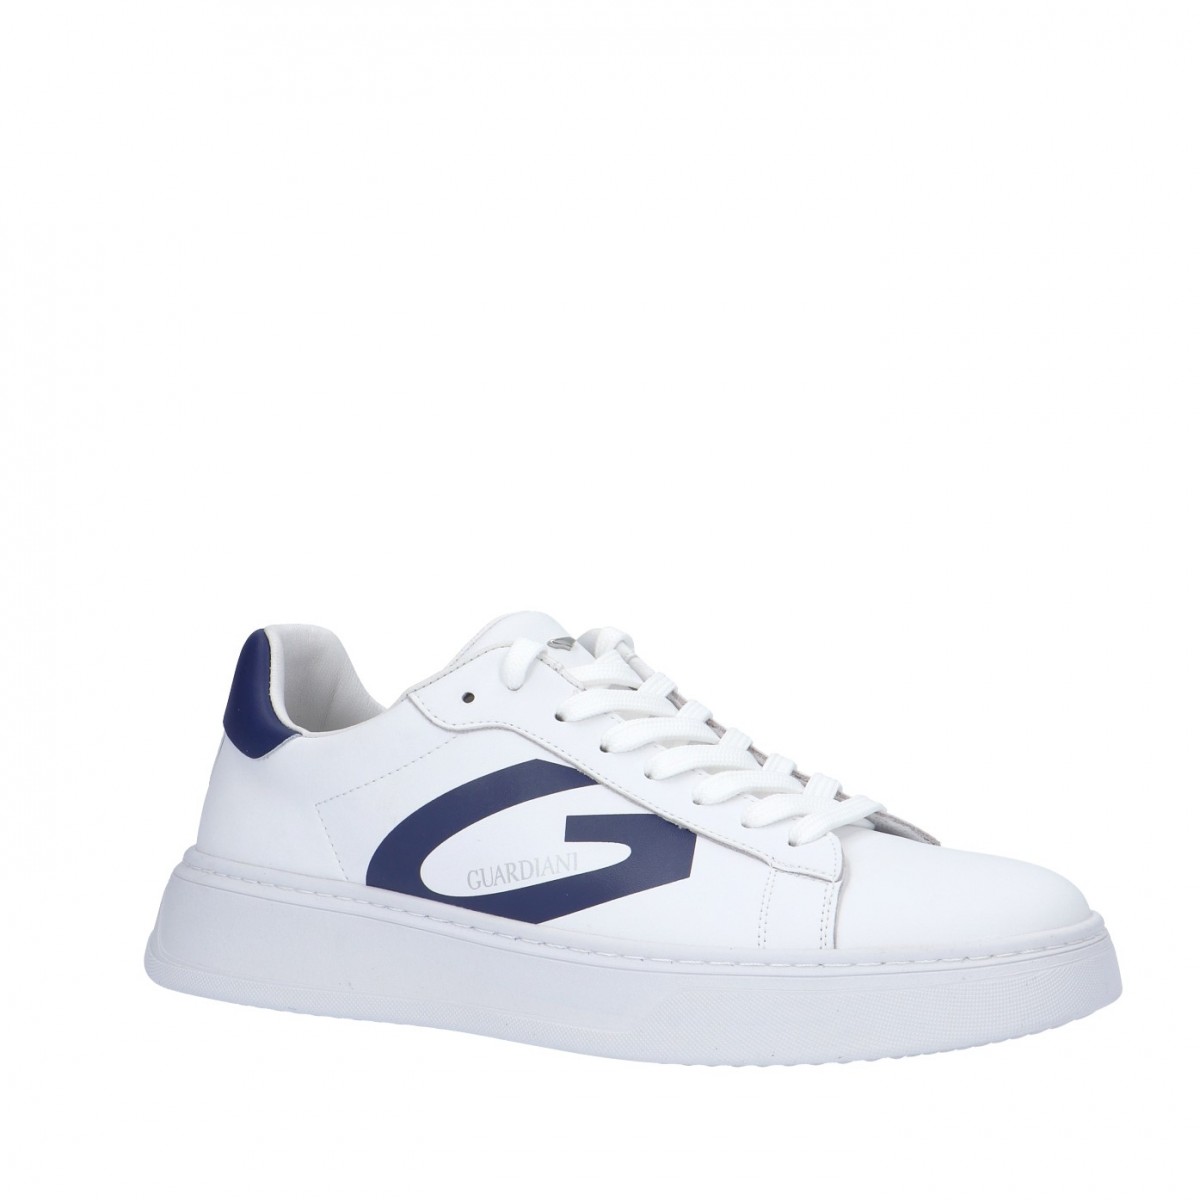 Guardiani Sneaker Bianco/bluette Gomma AGM025001